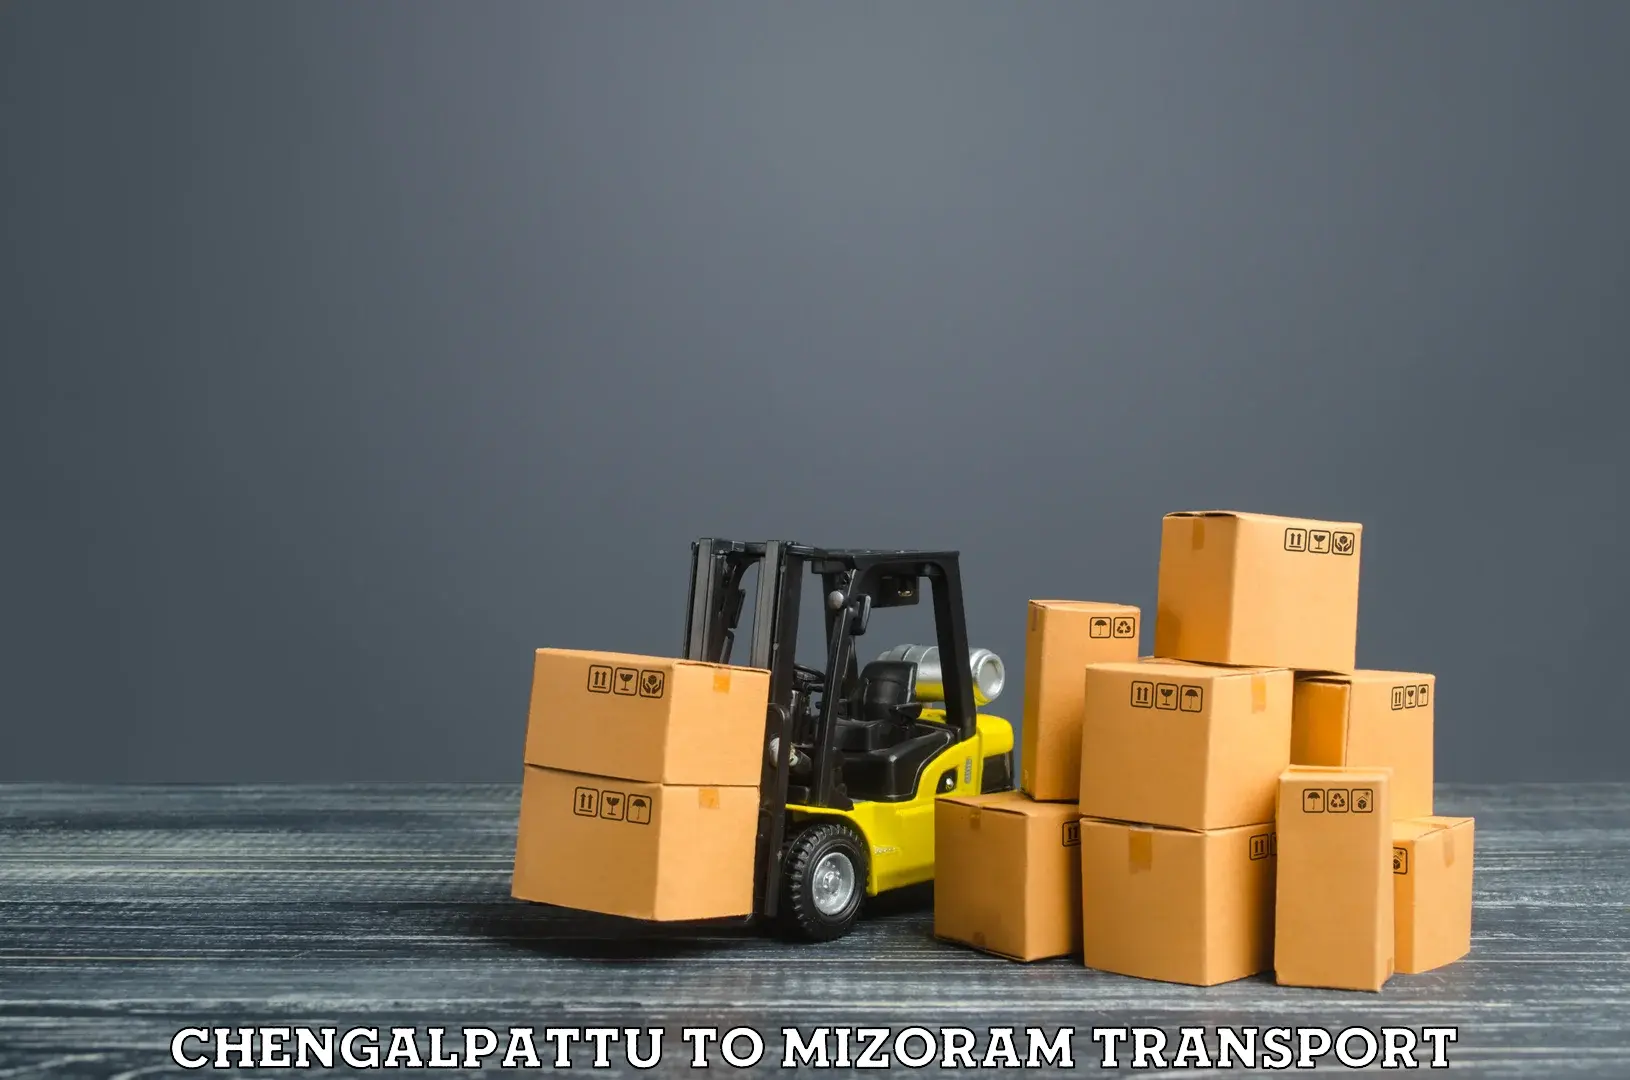 Shipping partner Chengalpattu to Mizoram